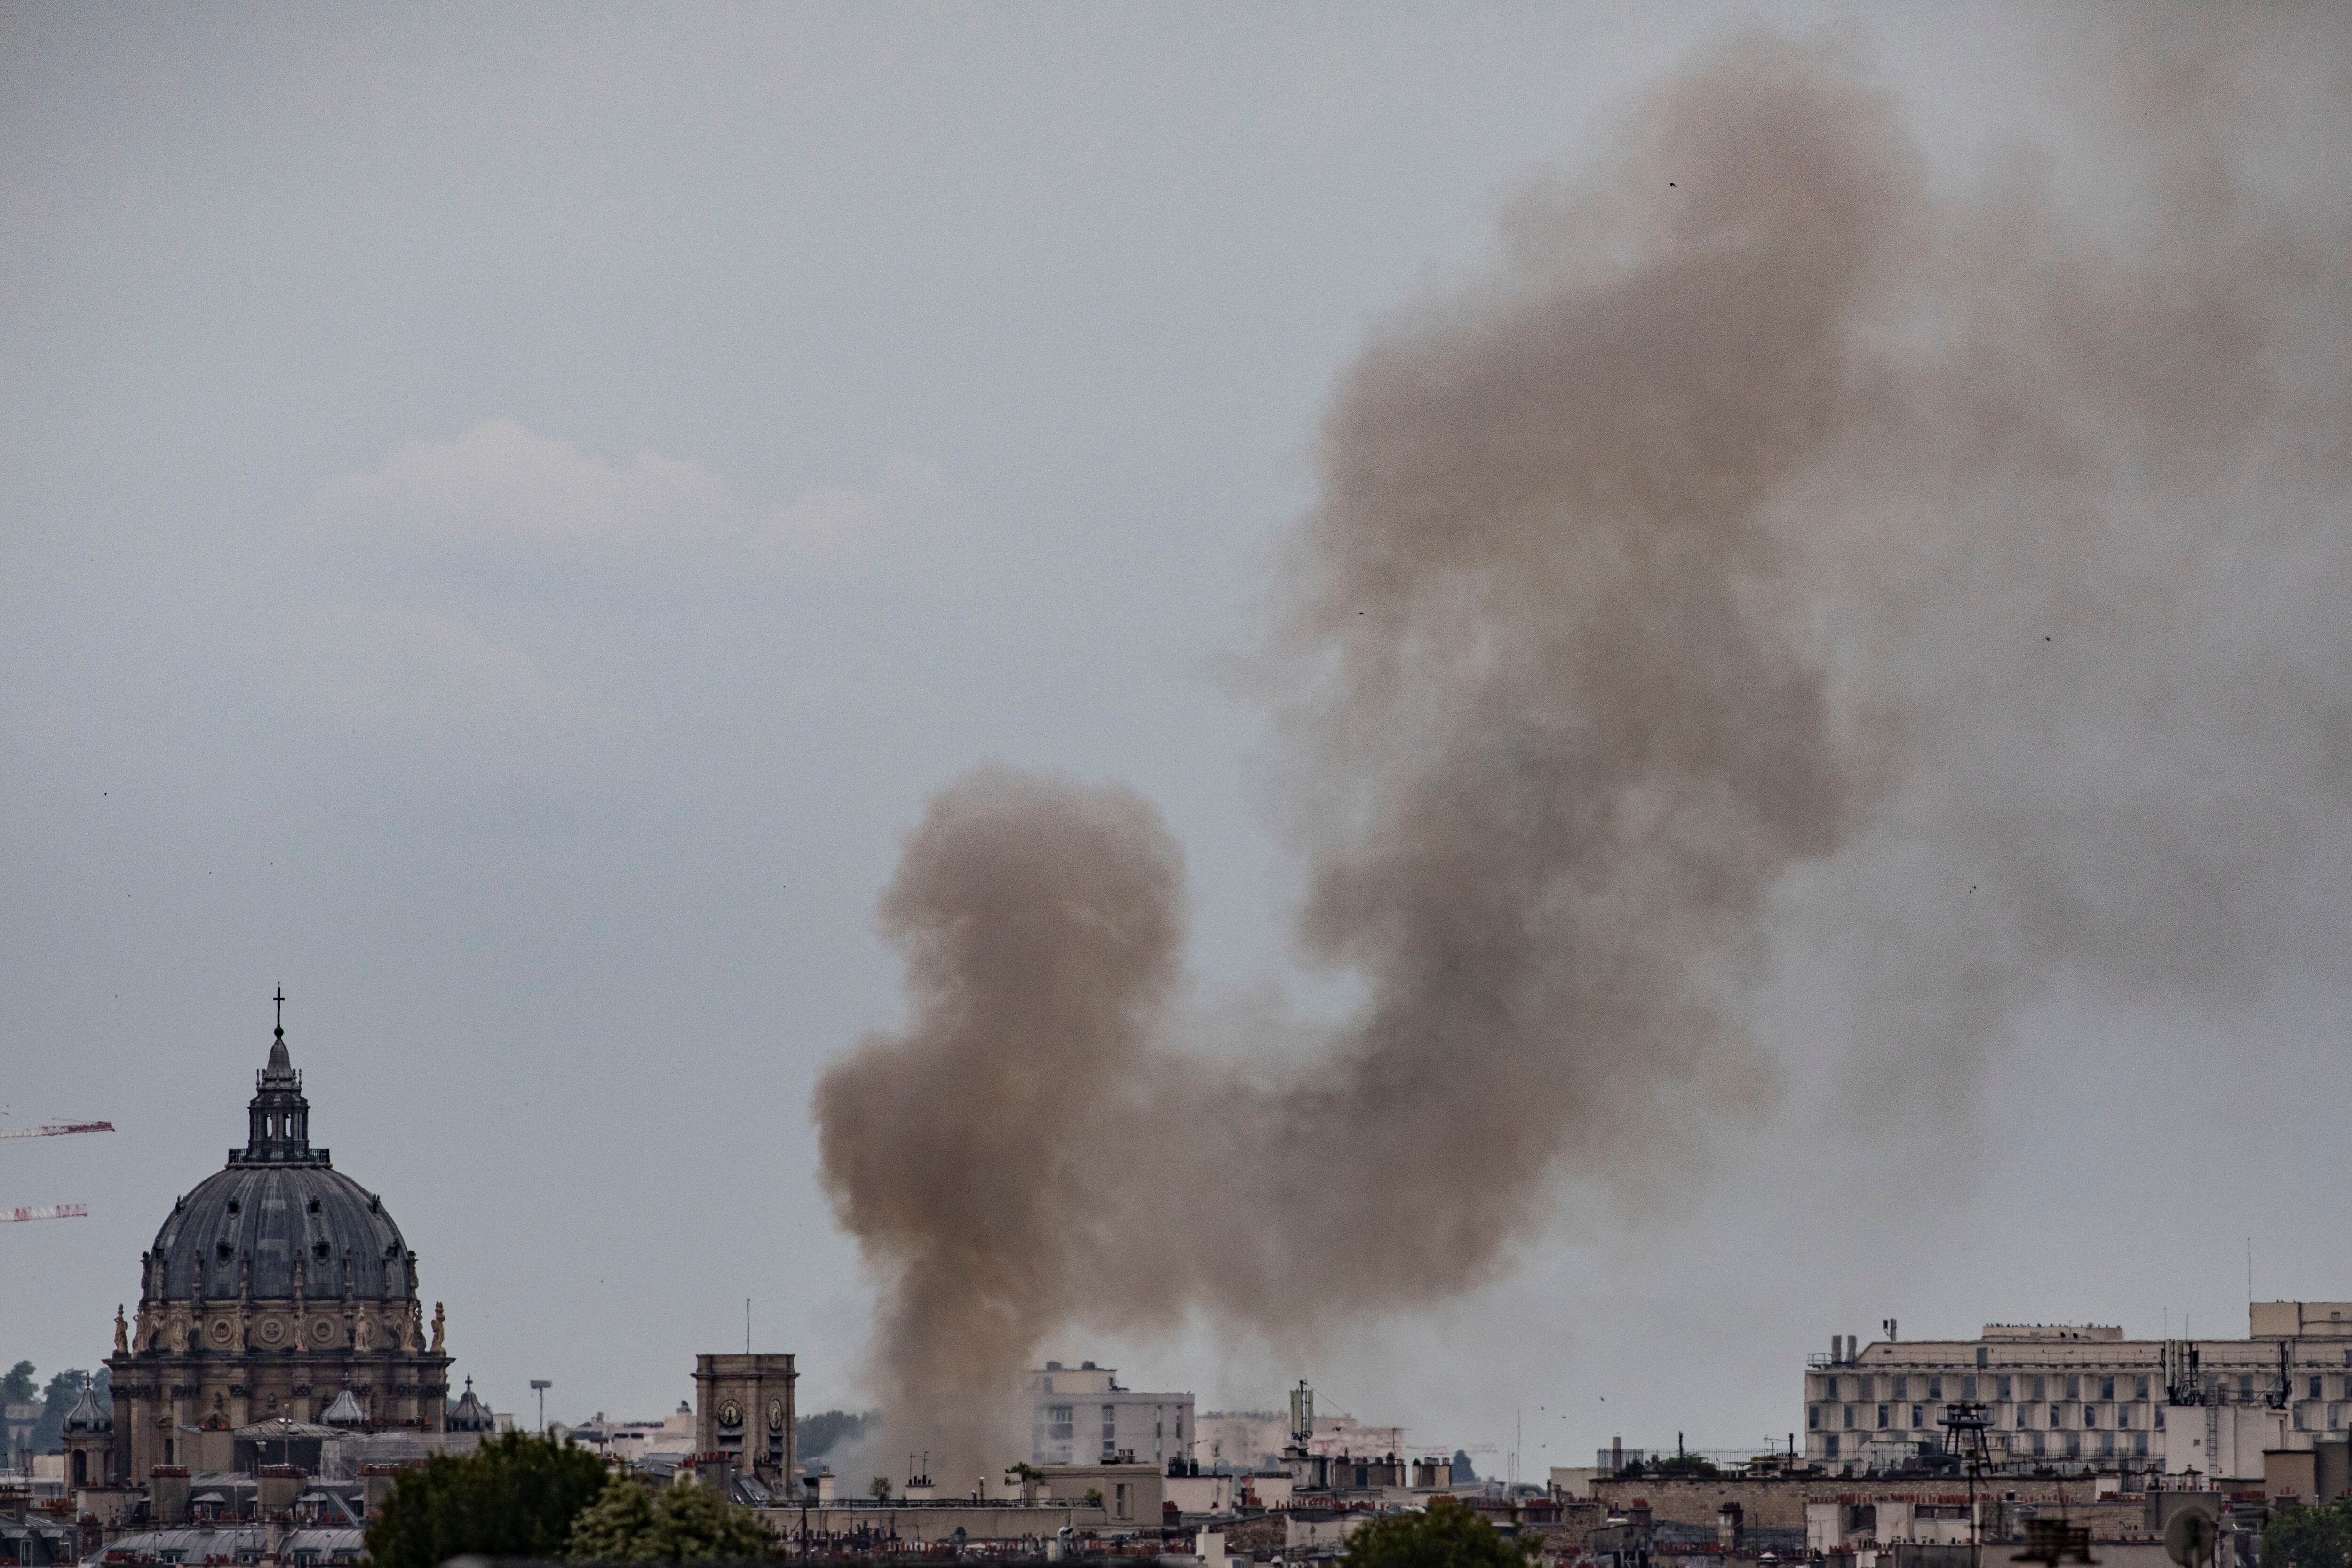 Una imagen de esta agencia mostraba una columna de humo y llamas sobre las ruinas de un edificio.